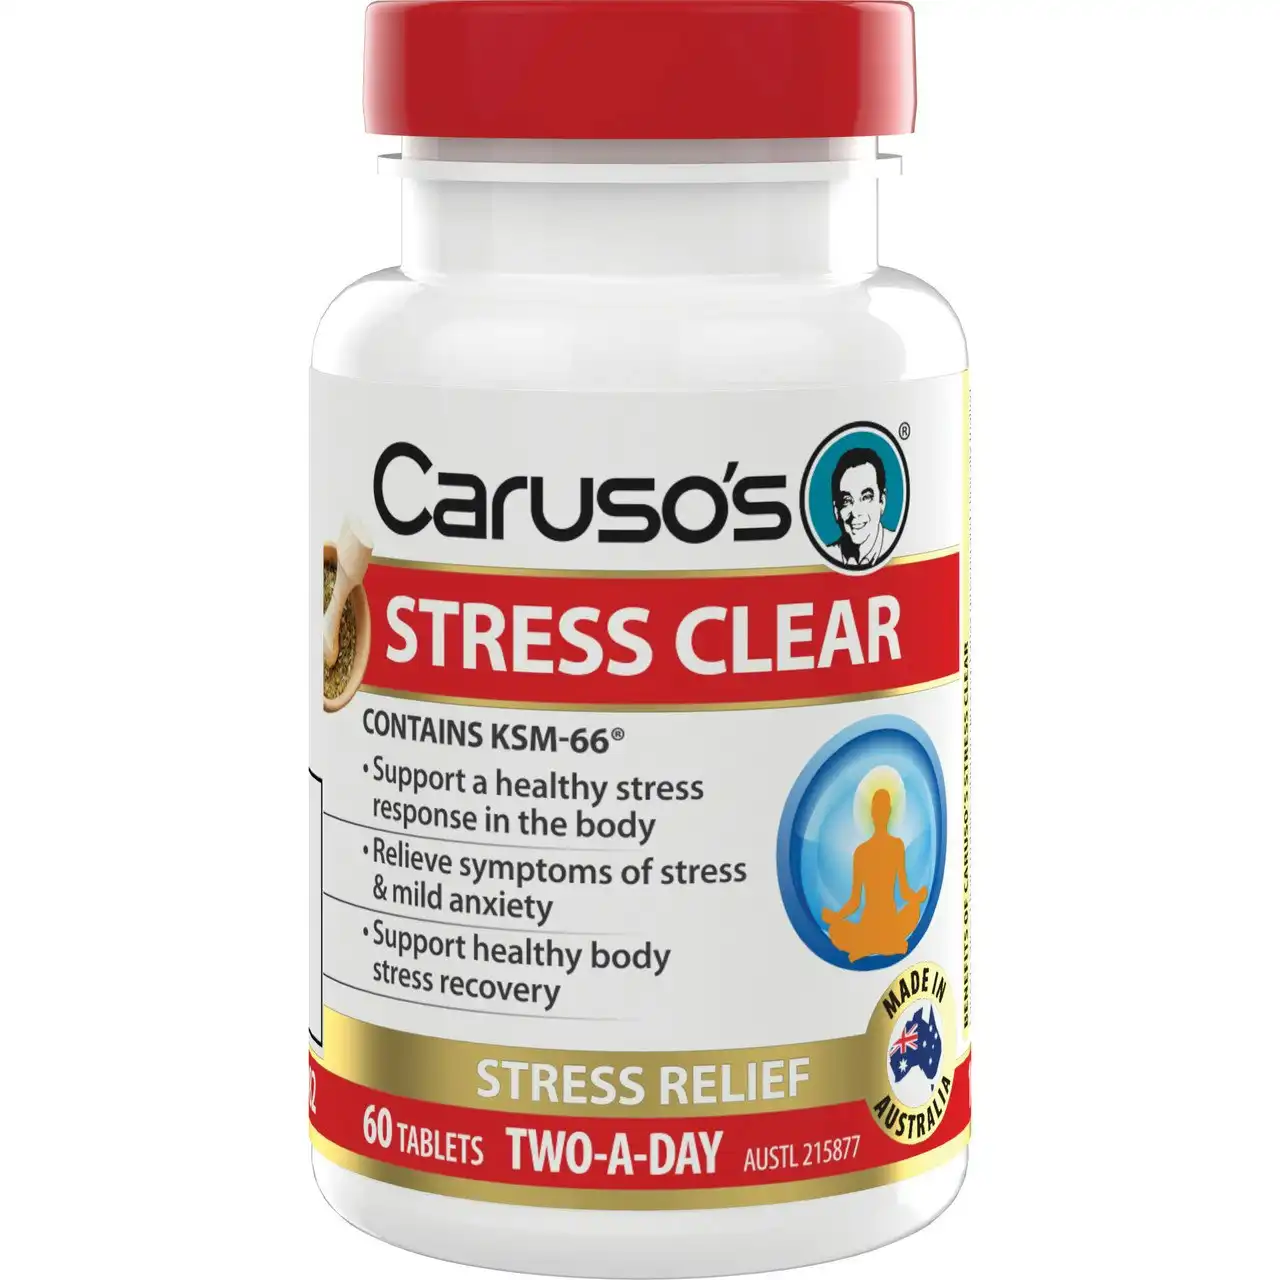 Caruso's Stress Clear